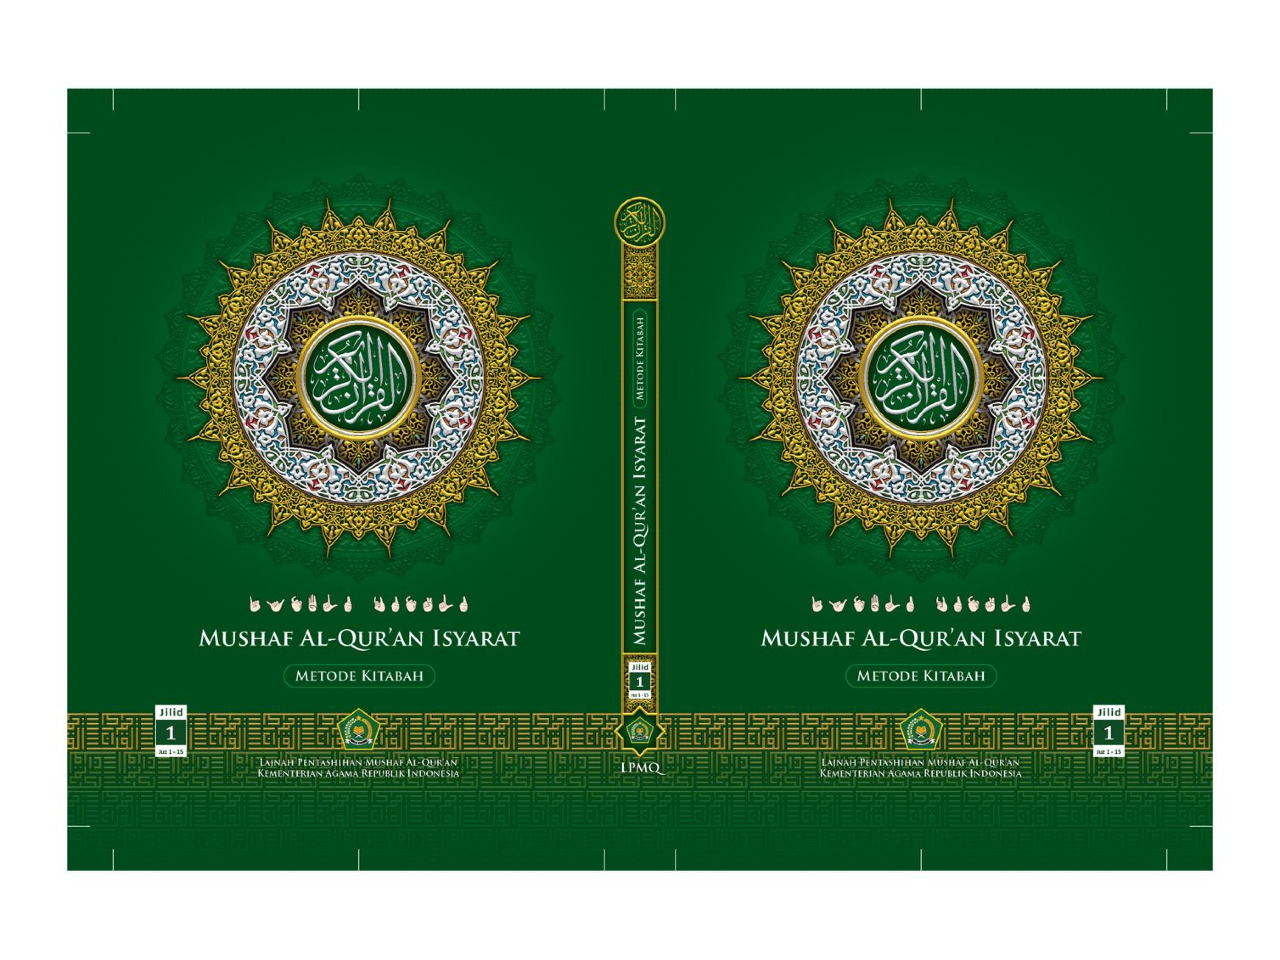 LPMQ Kemenag Sediakan 10 Master Mushaf Al-Qur'an Siap Cetak, Gratis!

